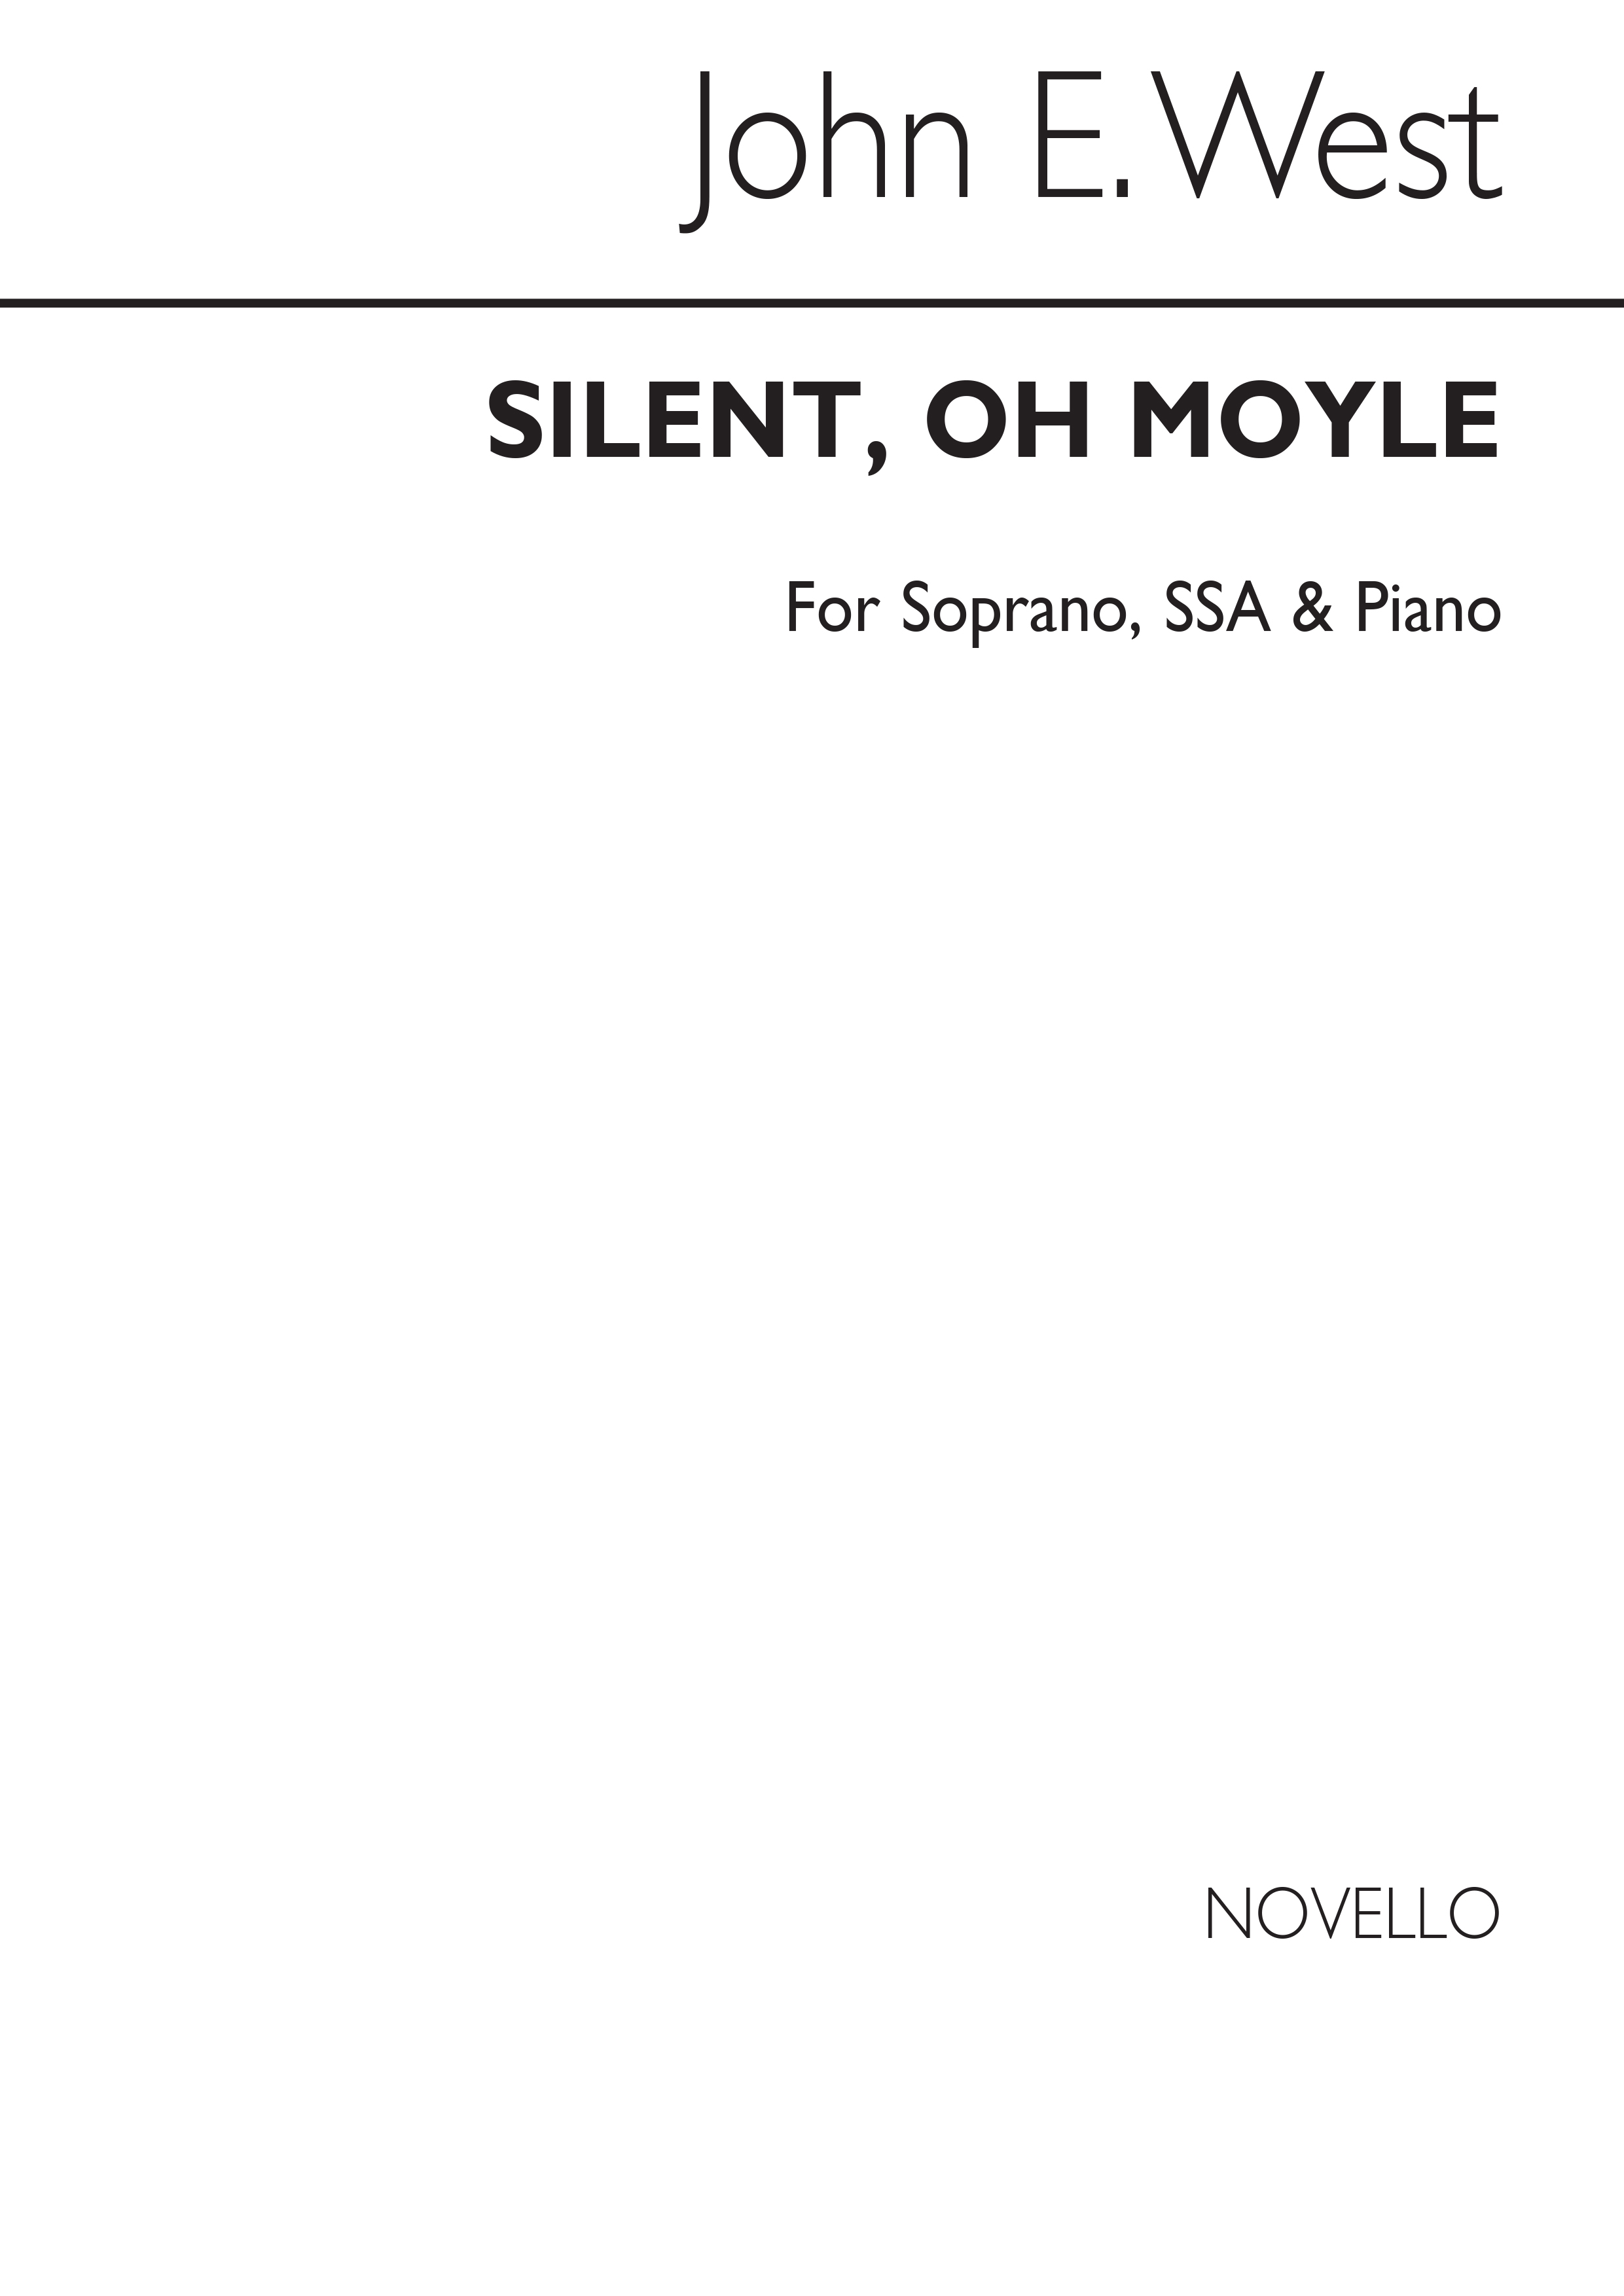 John E. West: Silent, Oh Moyle S/Ssa/Piano